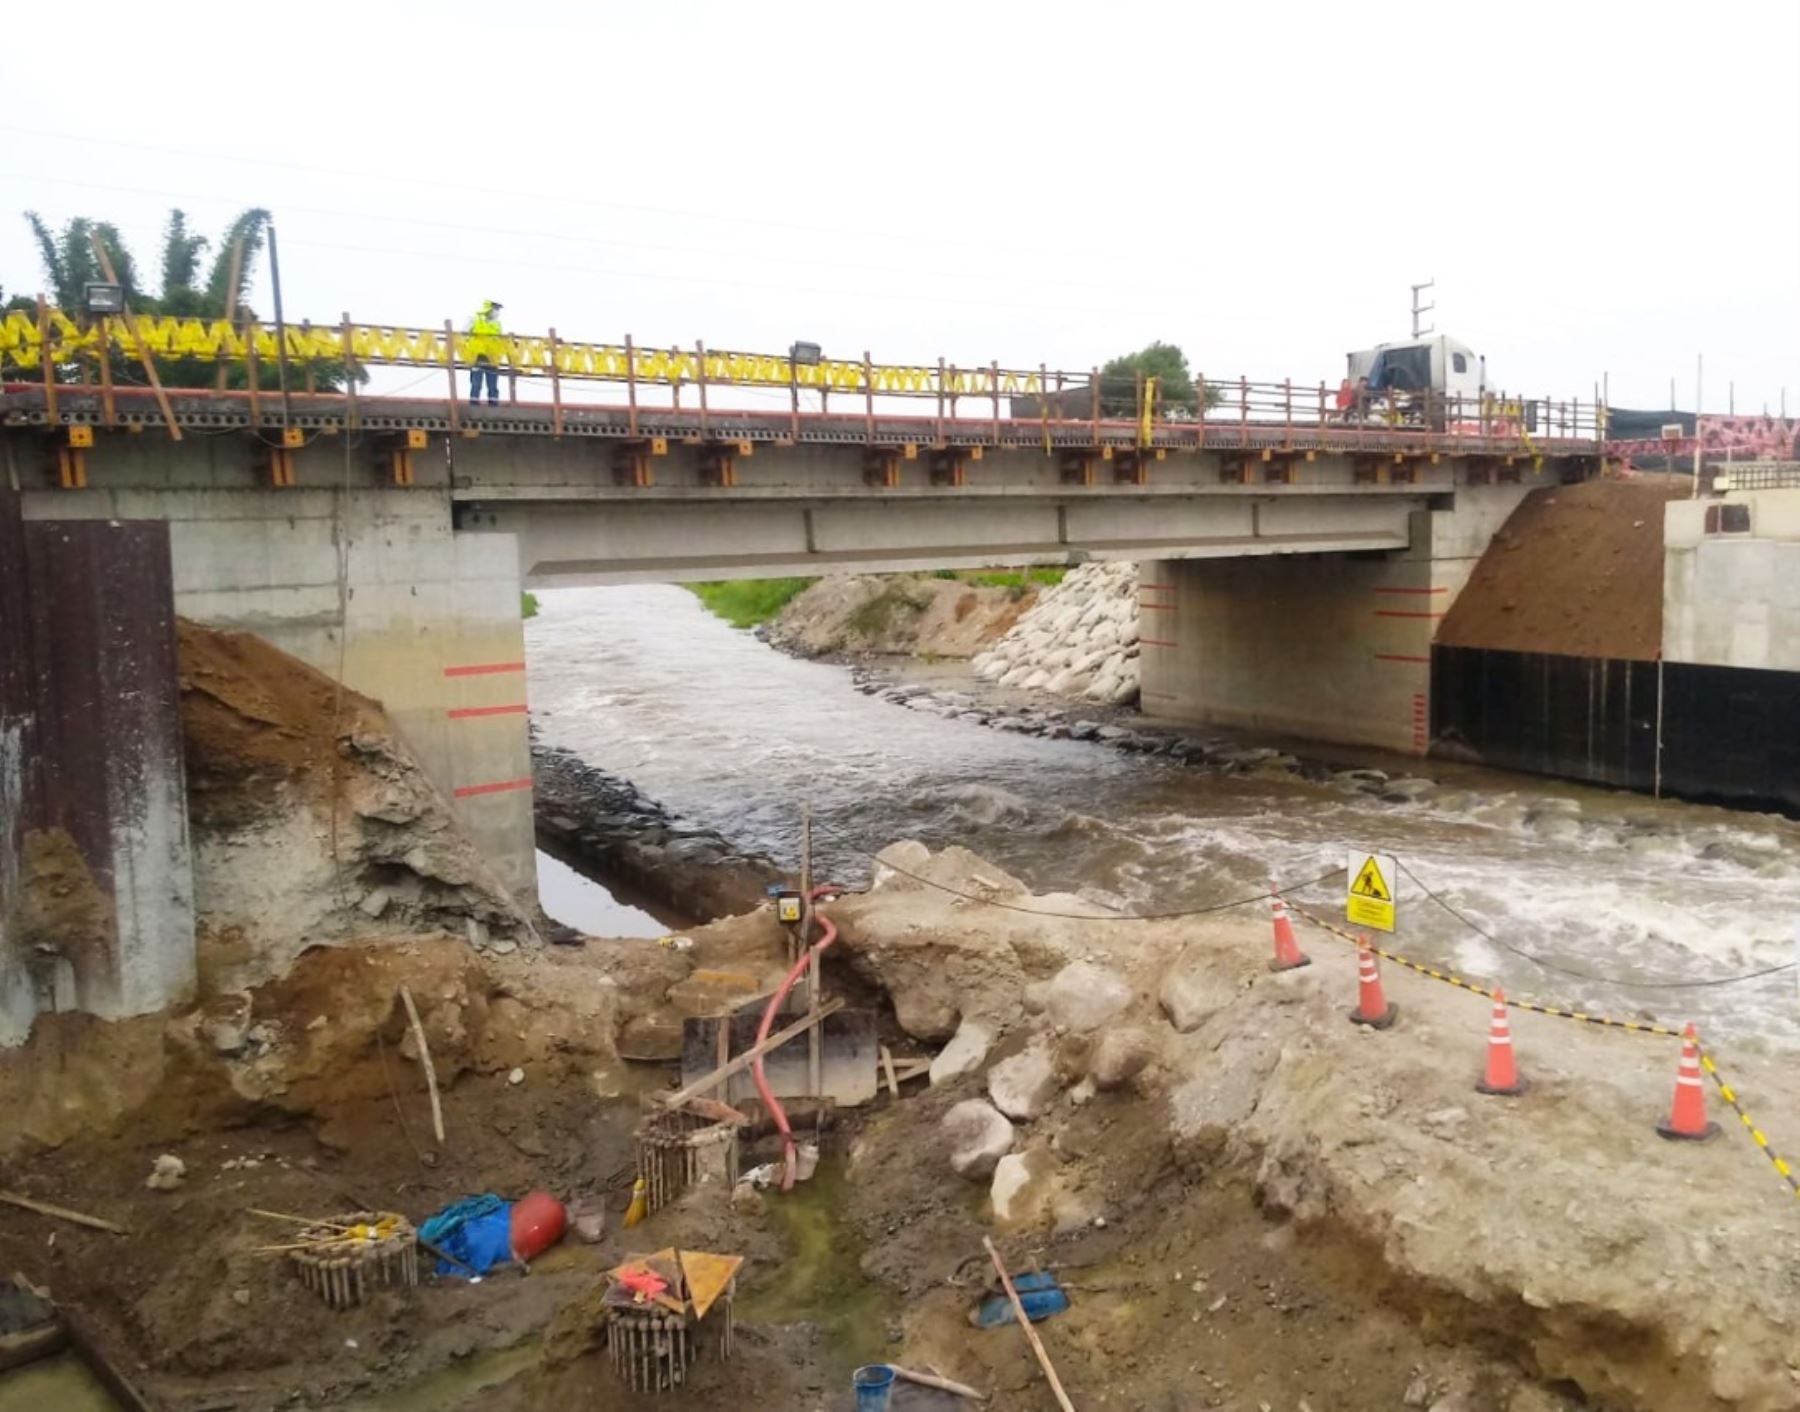 Culminan las obras de reconstrucción de dos puentes ubicados en Chimbote y en Barranca. Ambas infraestructuras resultaron dañadas por el Fenómeno El Niño costero de 2017.